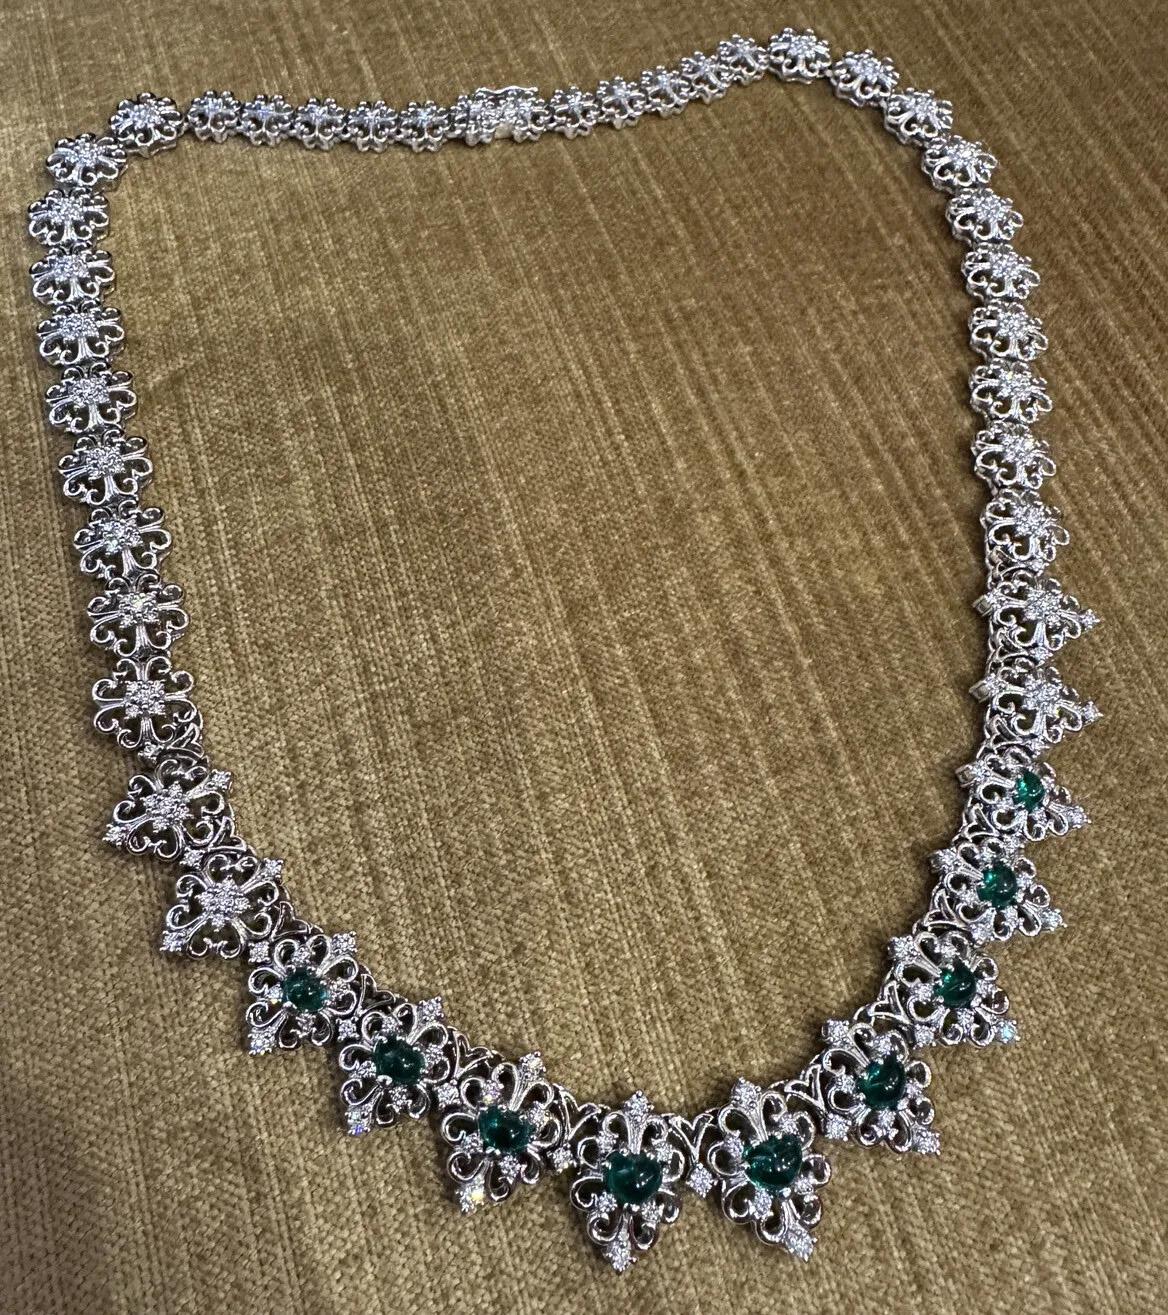 Filigrane Halskette aus Platin mit Smaragdherz-Cabochon und Diamant

Smaragd- und Diamant-Halskette mit 9 lebhaften, tiefgrünen, herzförmigen Smaragd-Cabochons mit runden Brillanten in verschlungenen Gliedern aus Platin. Die Halskette wird mit einem